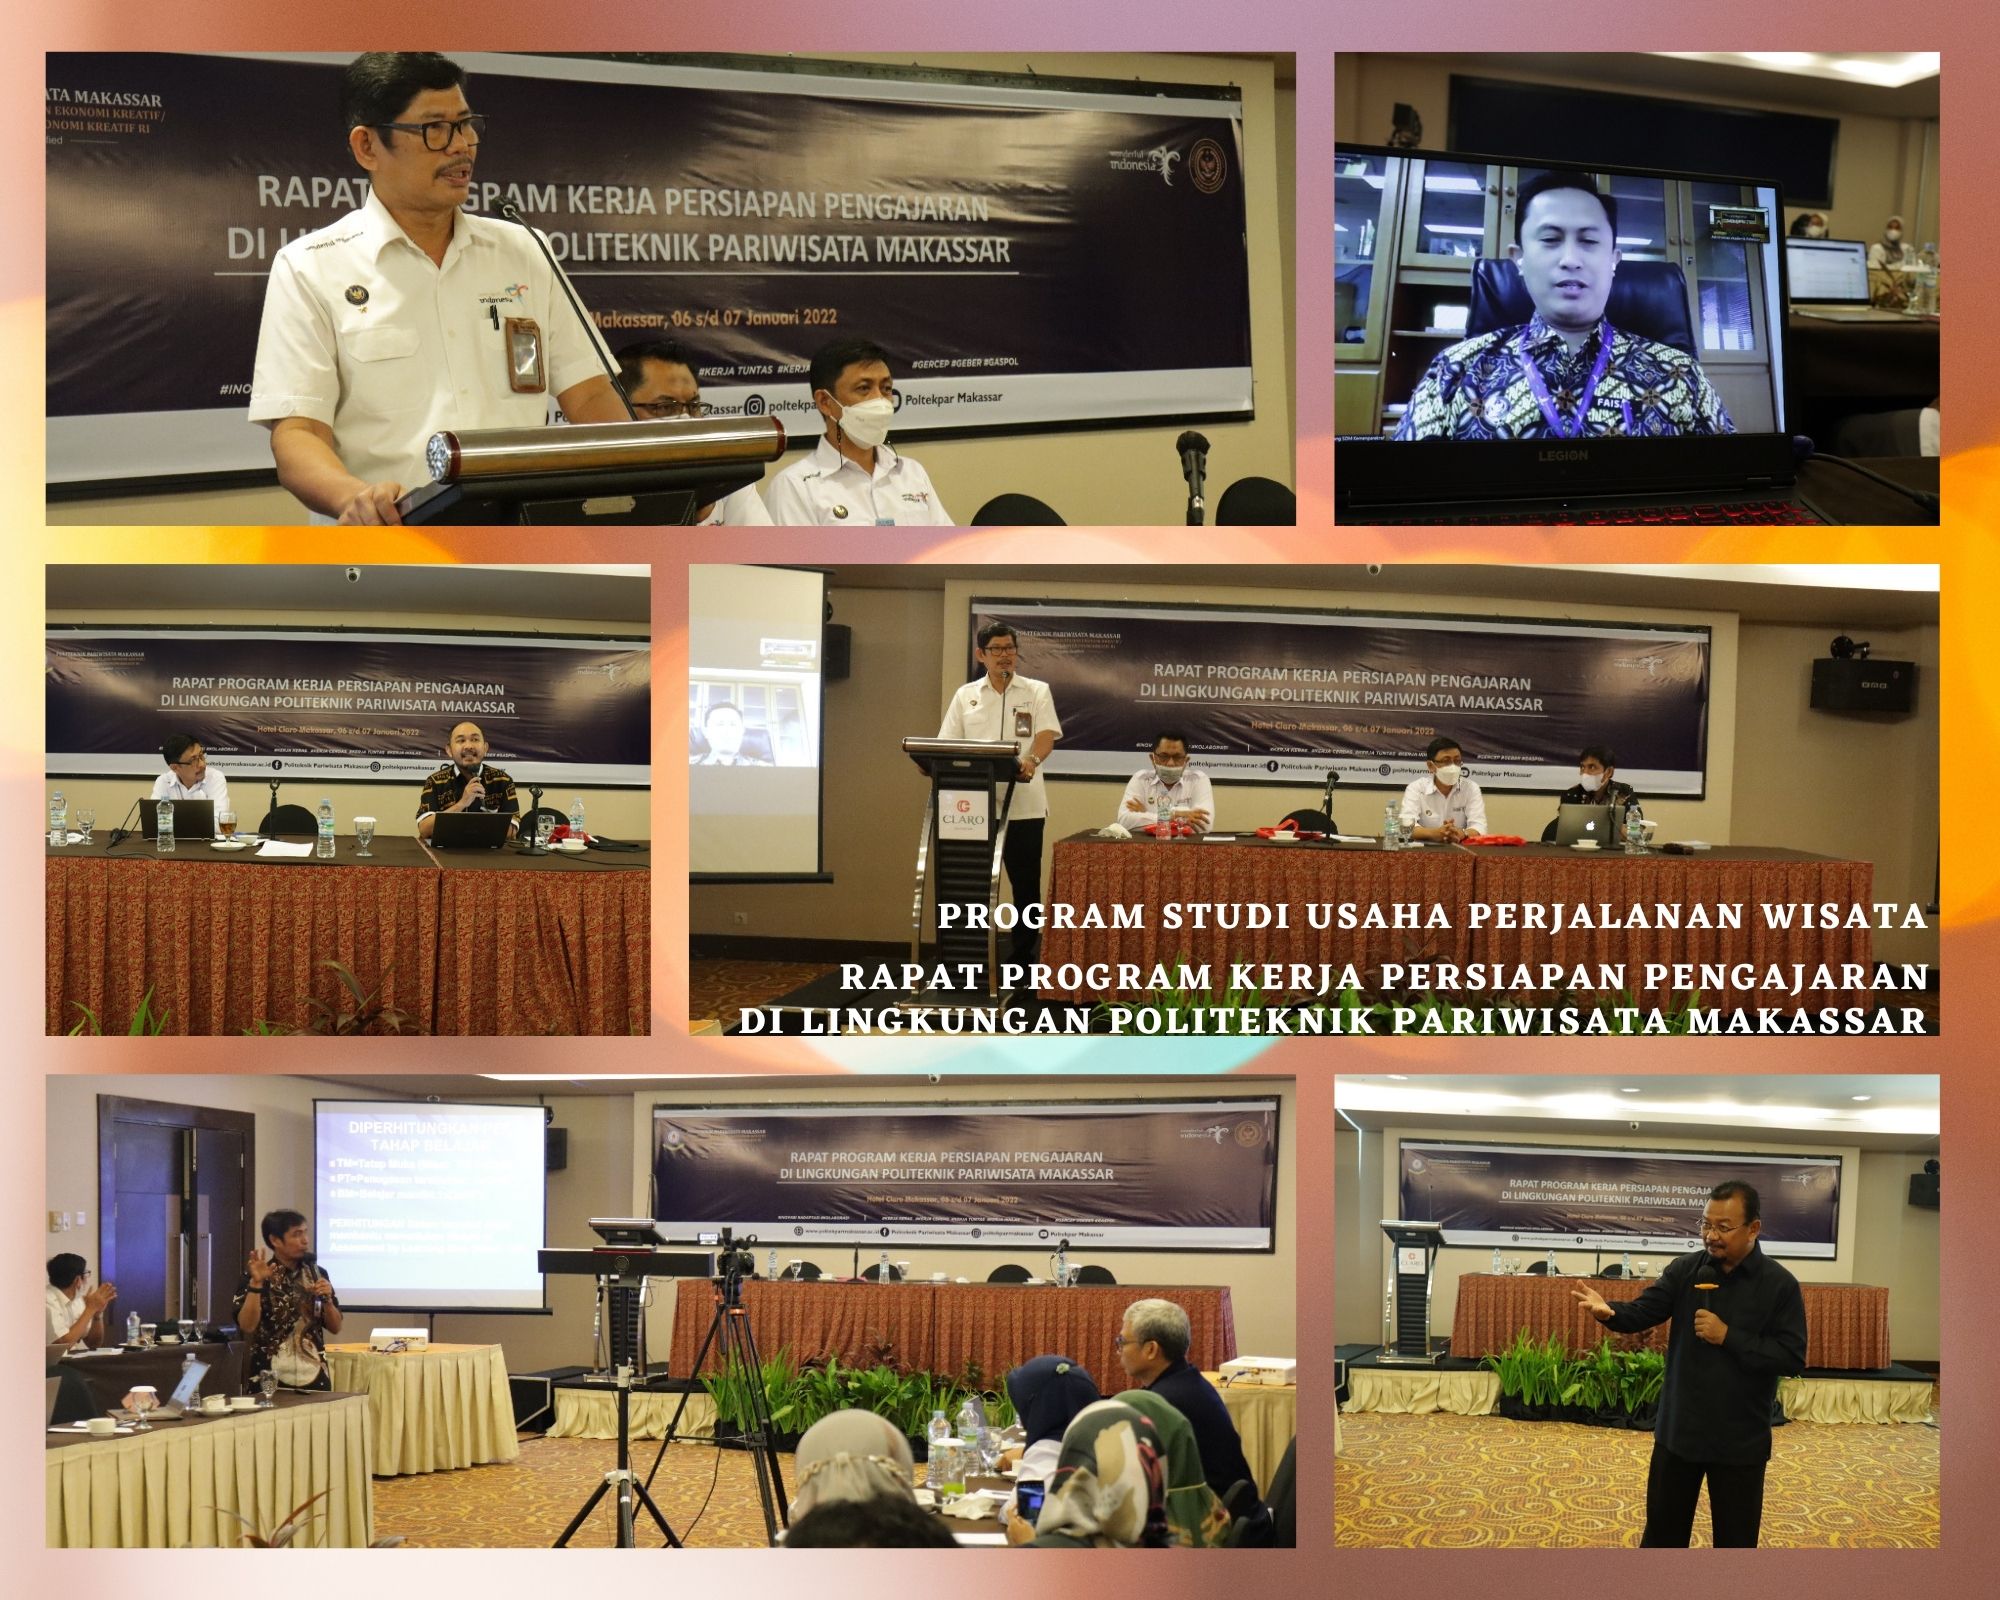 Rapat Program Kerja Persiapan Pengajaran di Lingkungan Politeknik Pariwisata Makassar